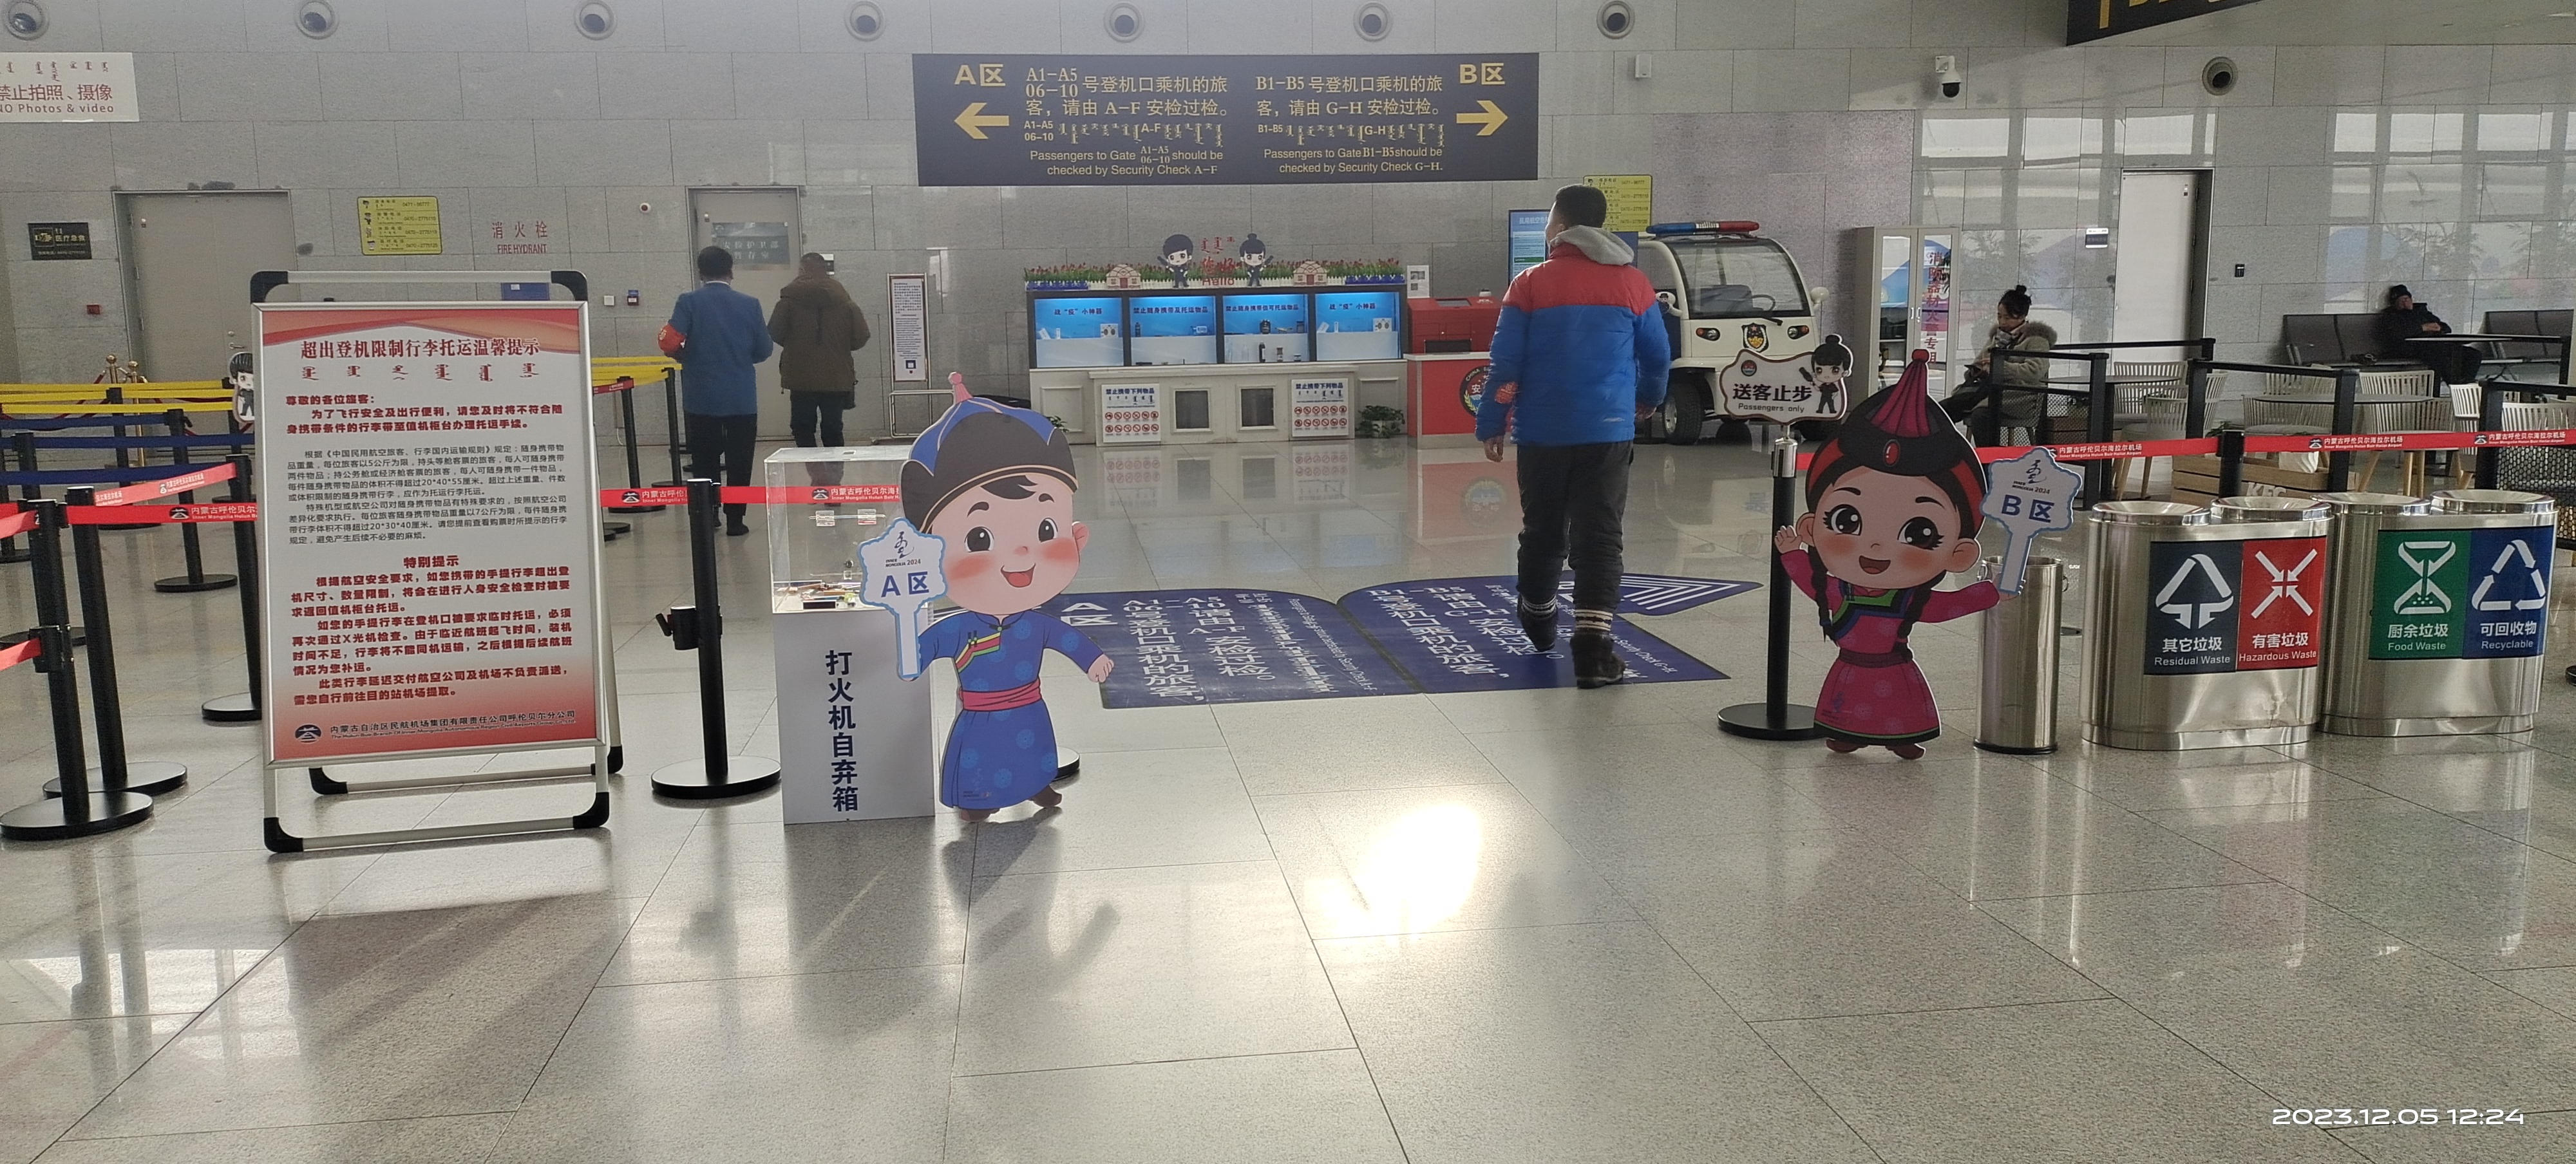 机场冬运会氛围营造登机安检口吉祥物.jpg